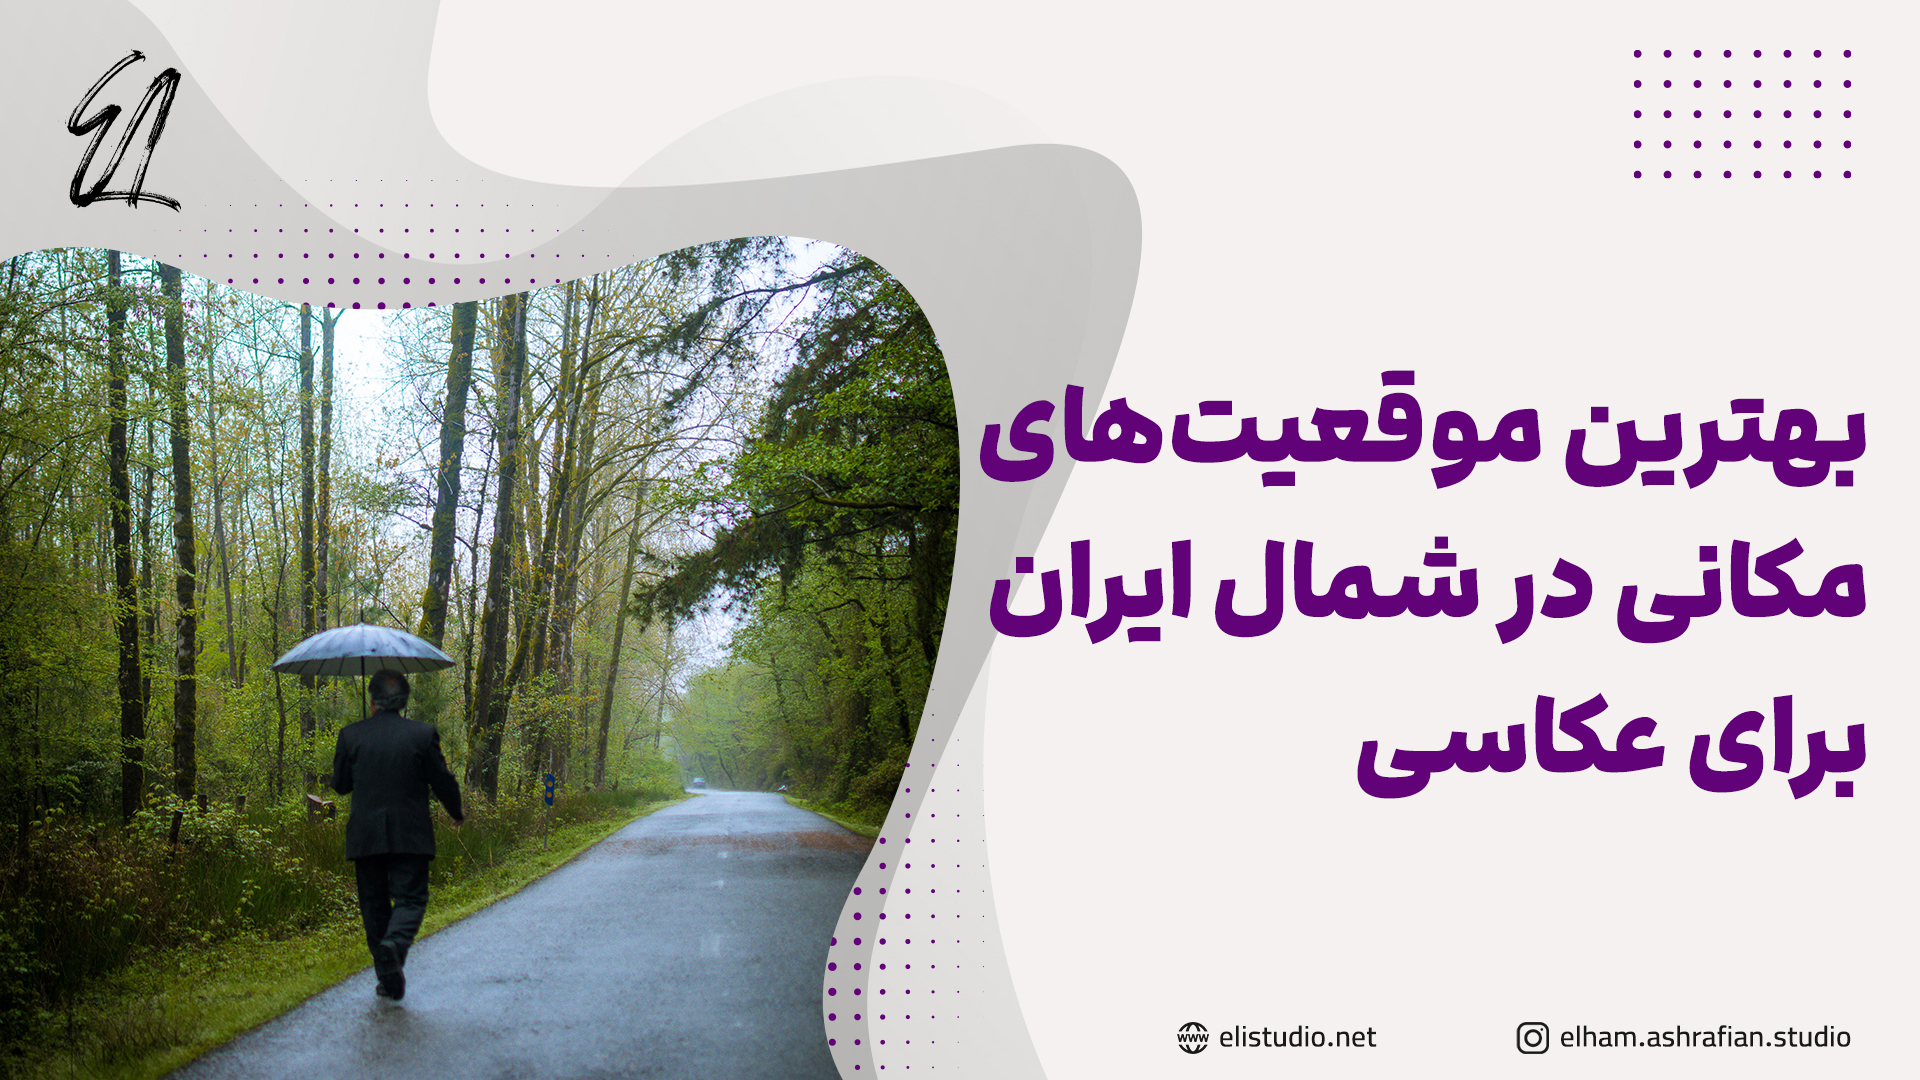 معرفی بهترین موقعیت های مکانی برای عکاسی در شمال ایران